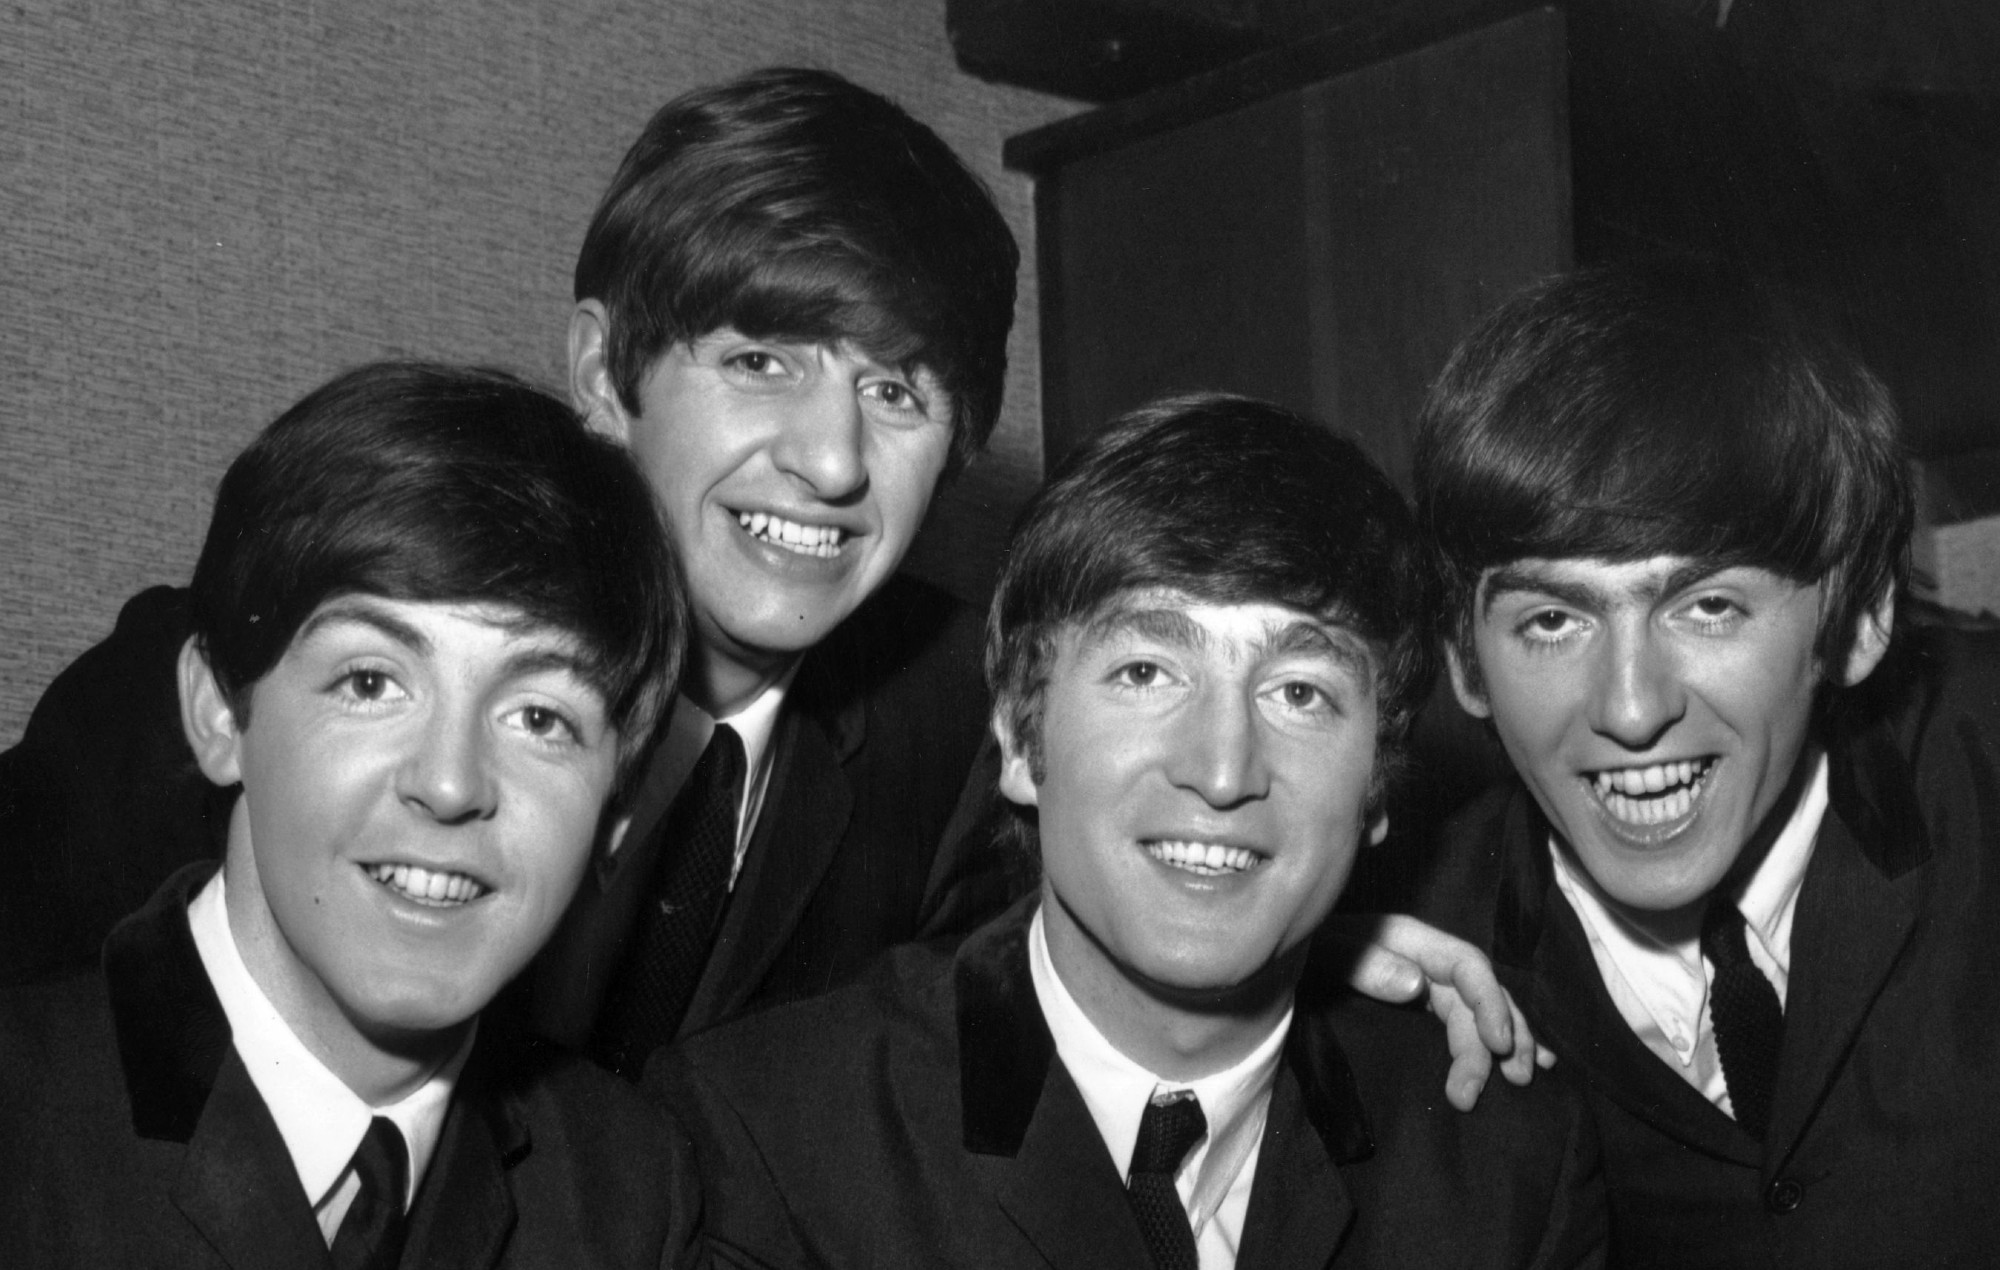 El biopic de Sam Mendes sobre los Beatles habría elegido a los Fab Four